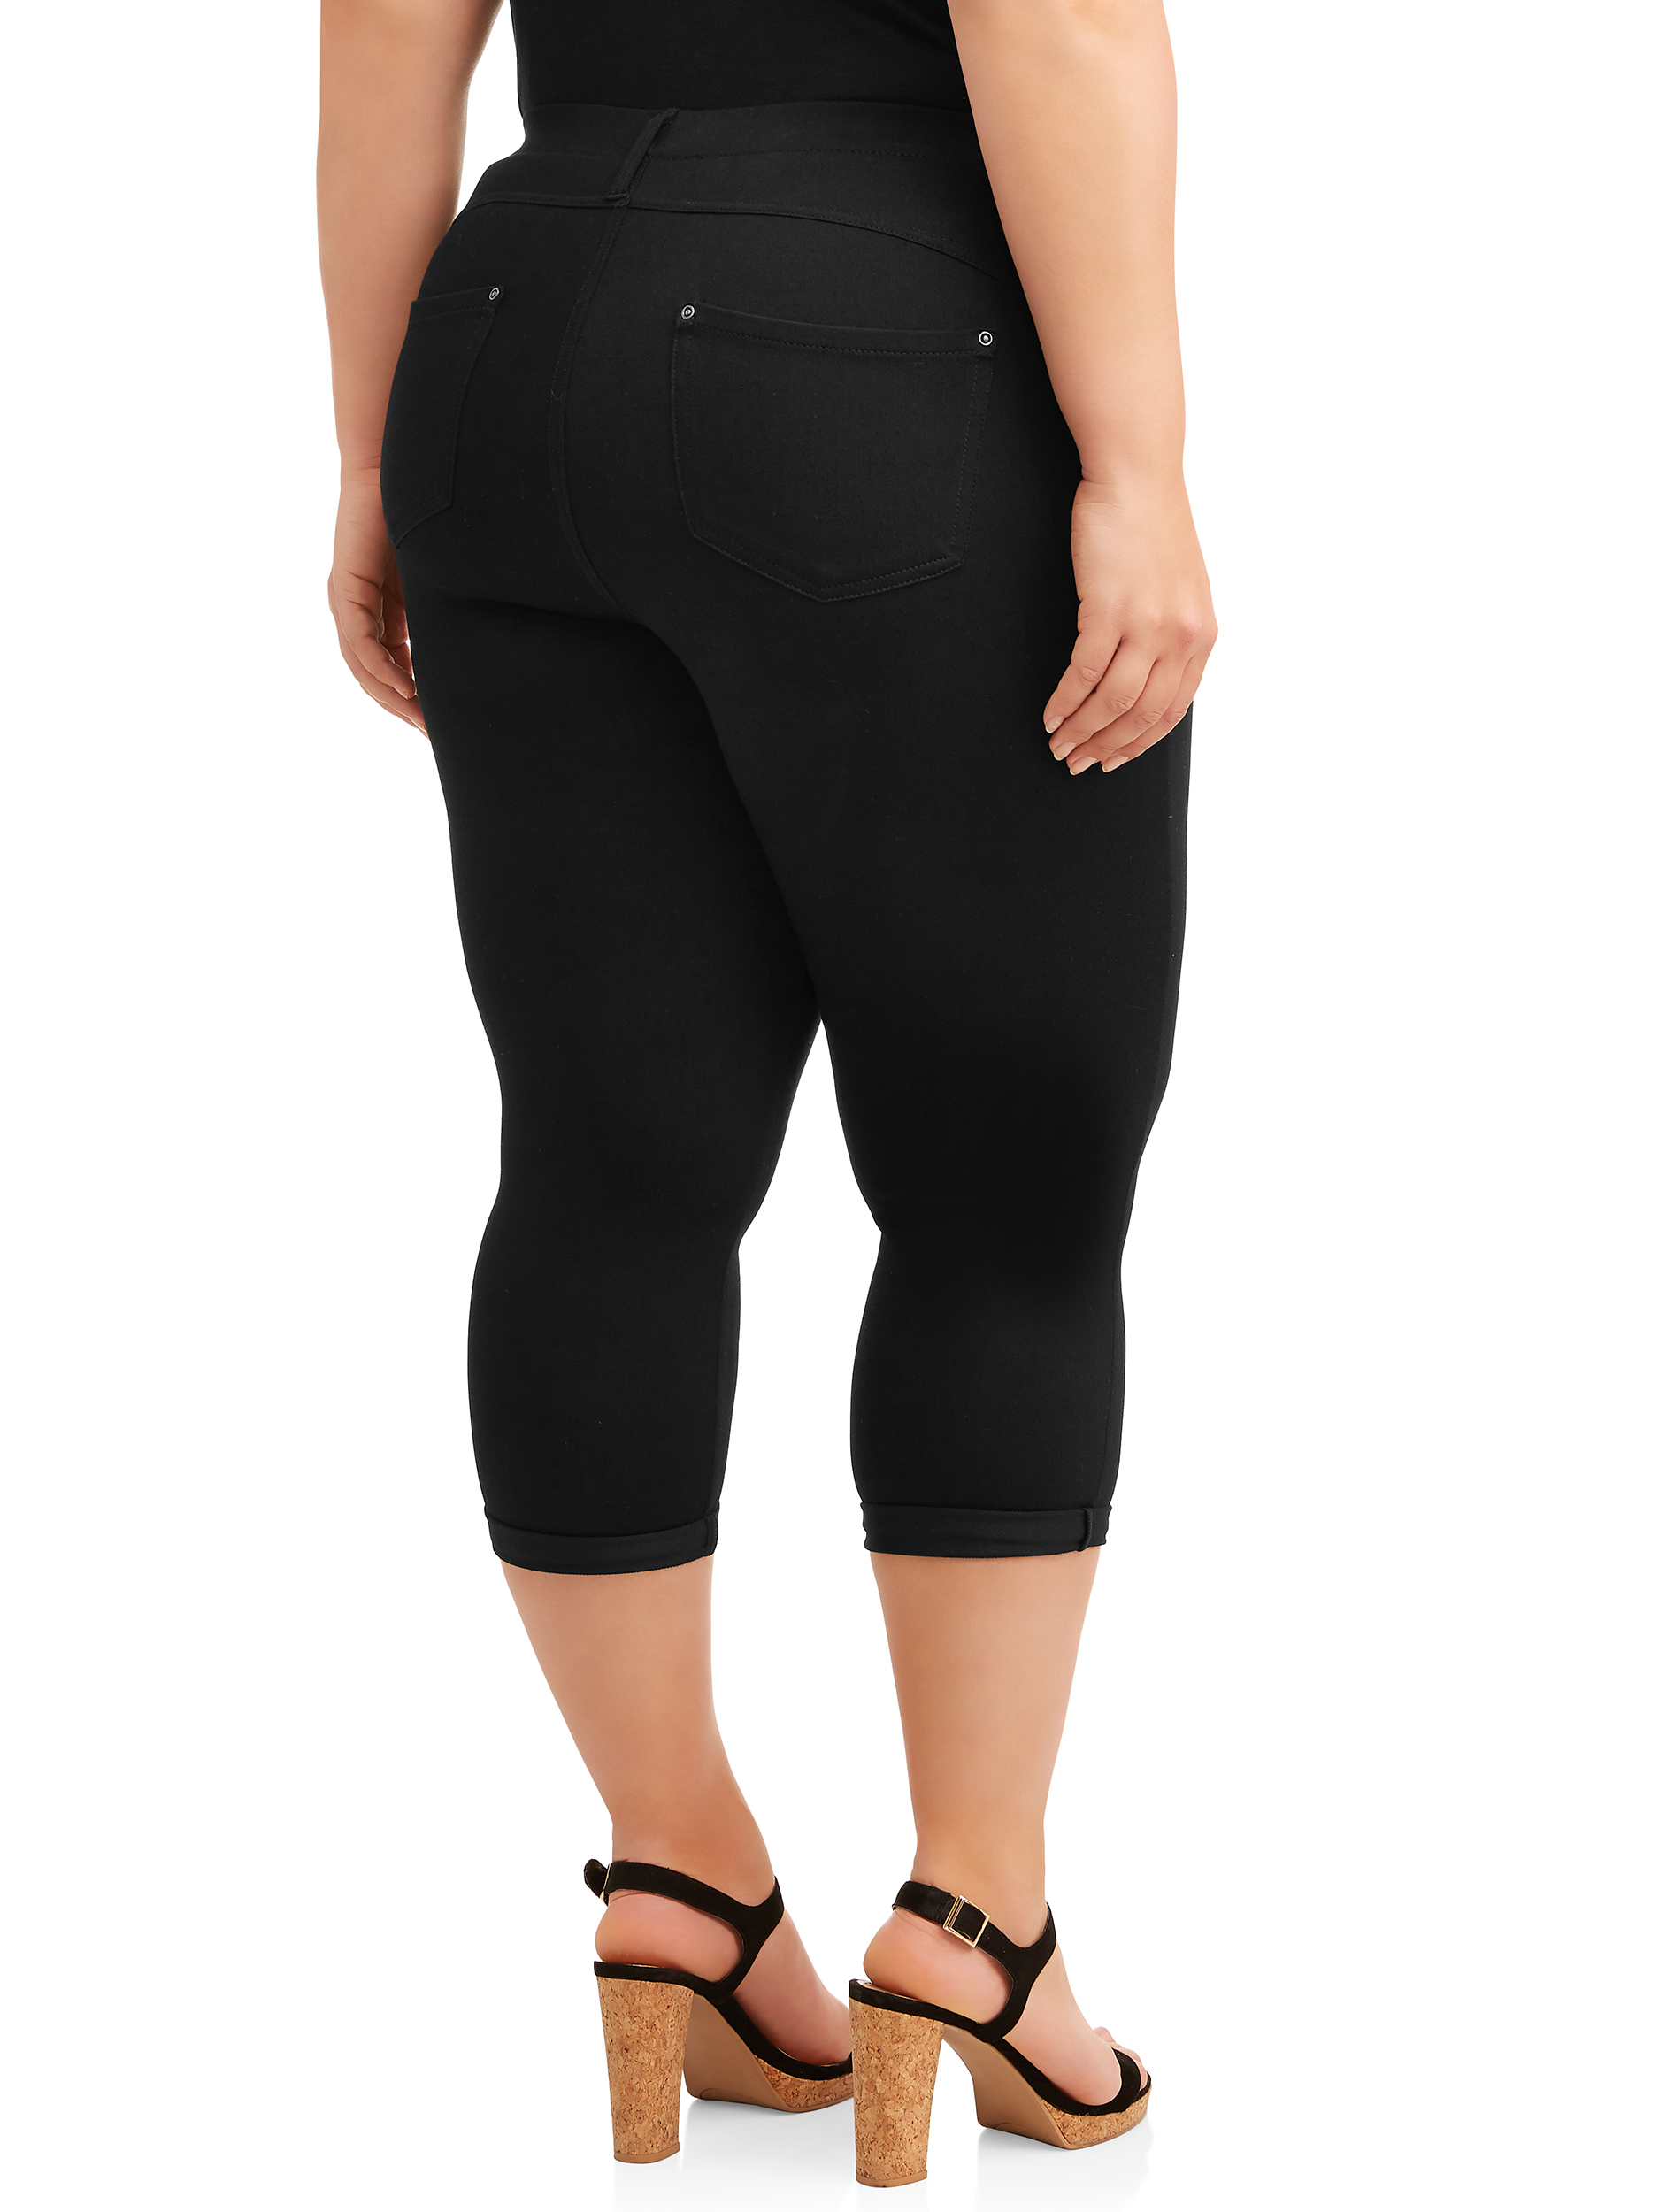 Terra & Sky Women's Plus Size Pull on Denim Capri Jeggings - image 2 of 9